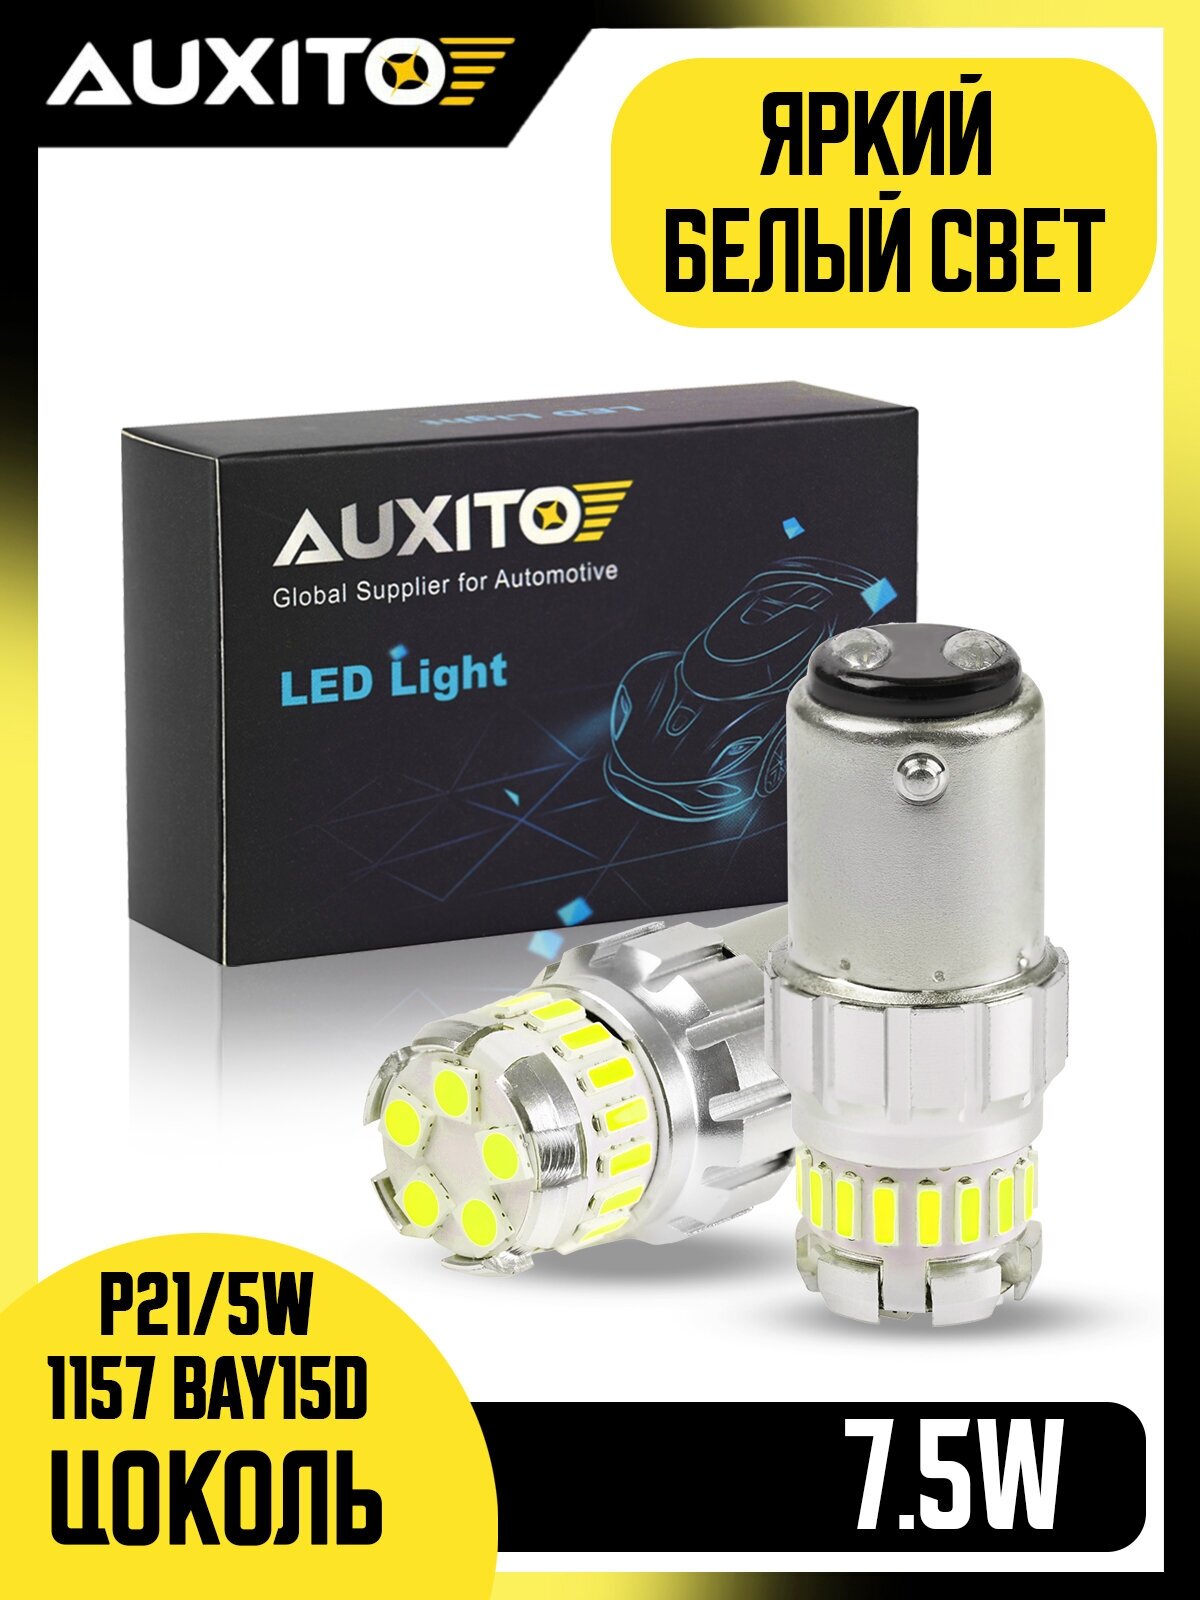 Светодиодная лампа AUXITO 1157 P21/5W цоколь BAY15D 2шт двухконтактная 6500К белый свет габариты стоп сигнал LED автомобильная